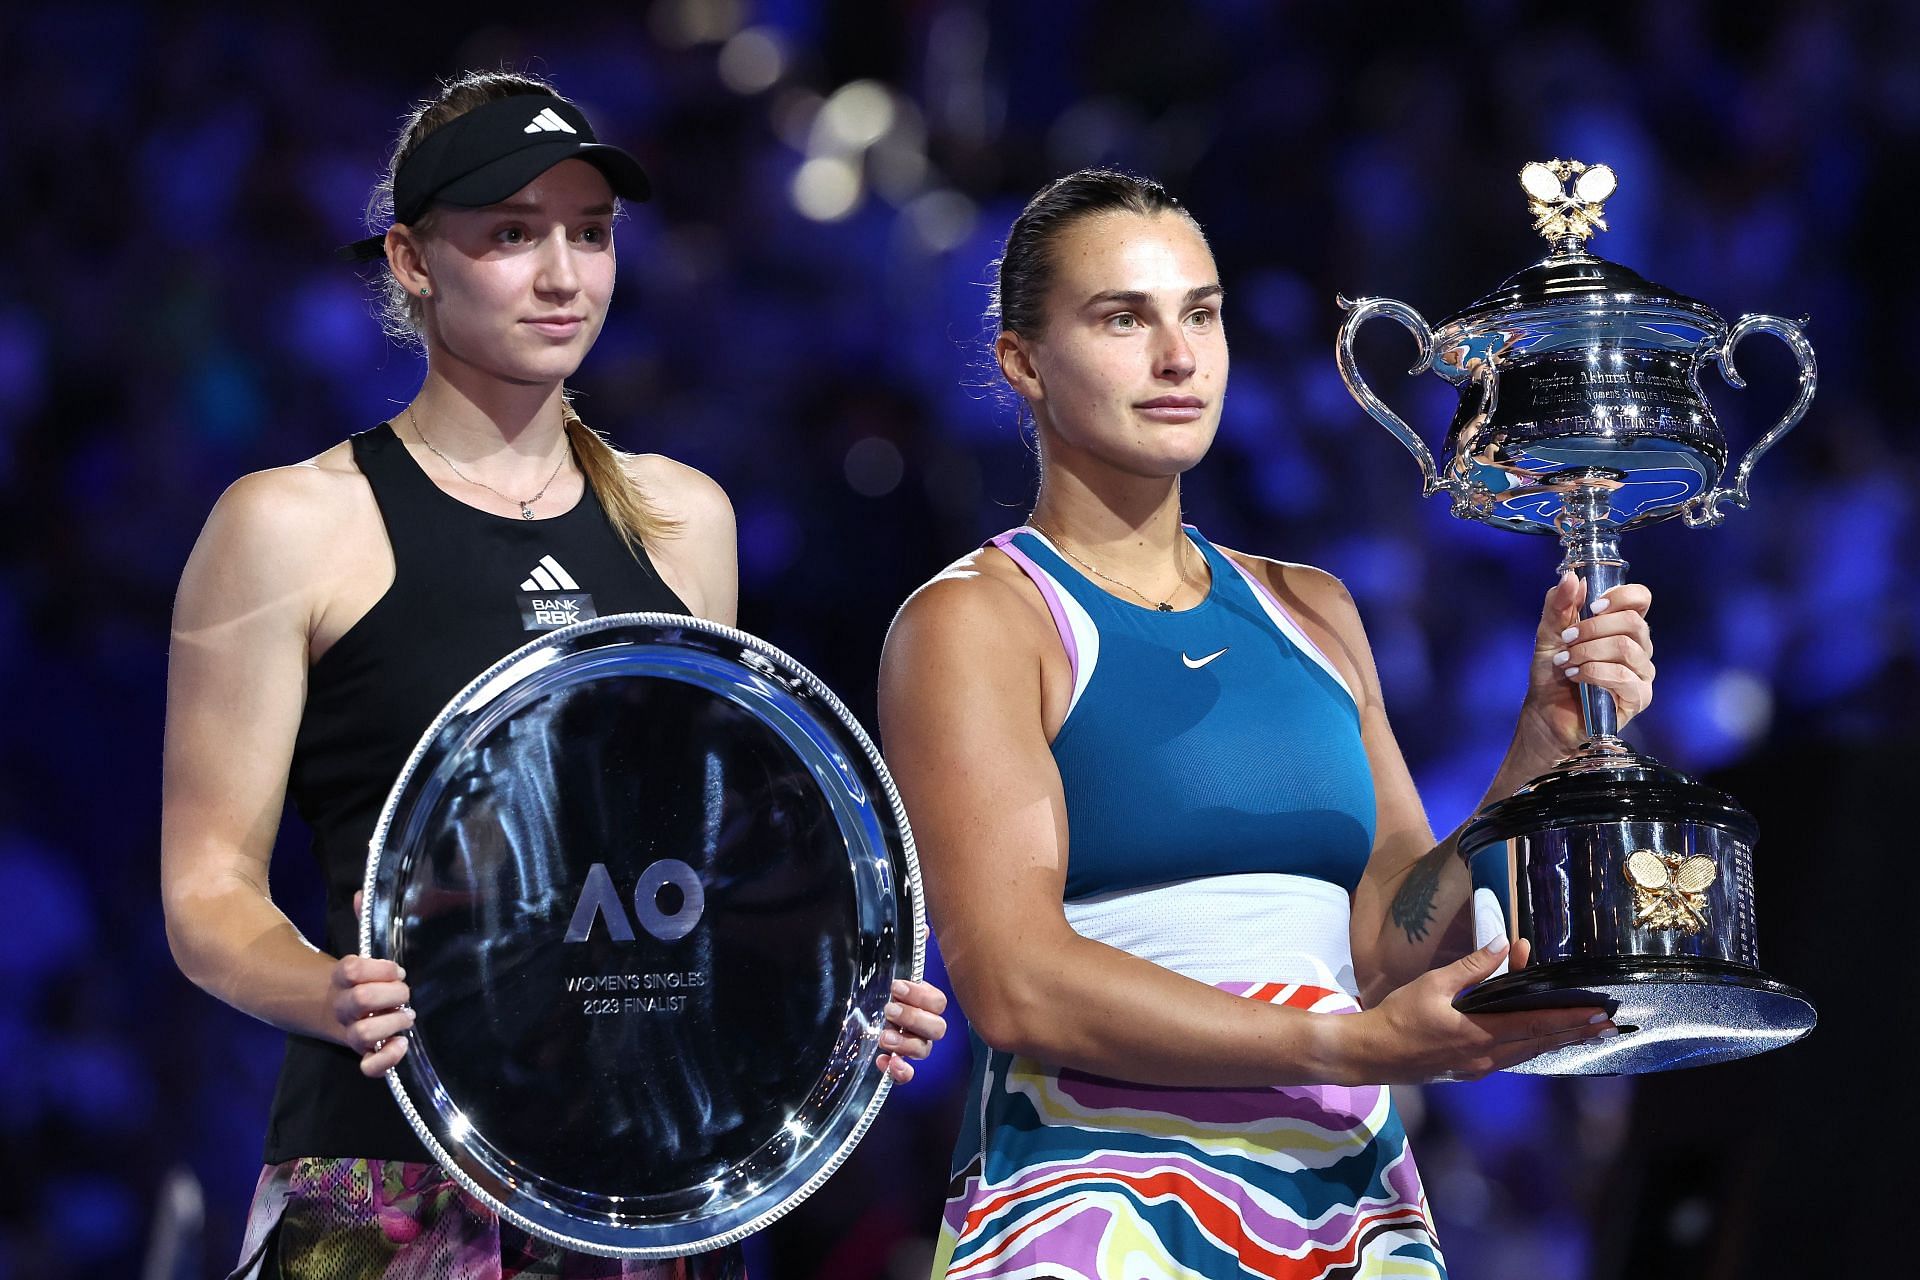 Elena Rybakina (left) lost to Sabalenka in three sets.